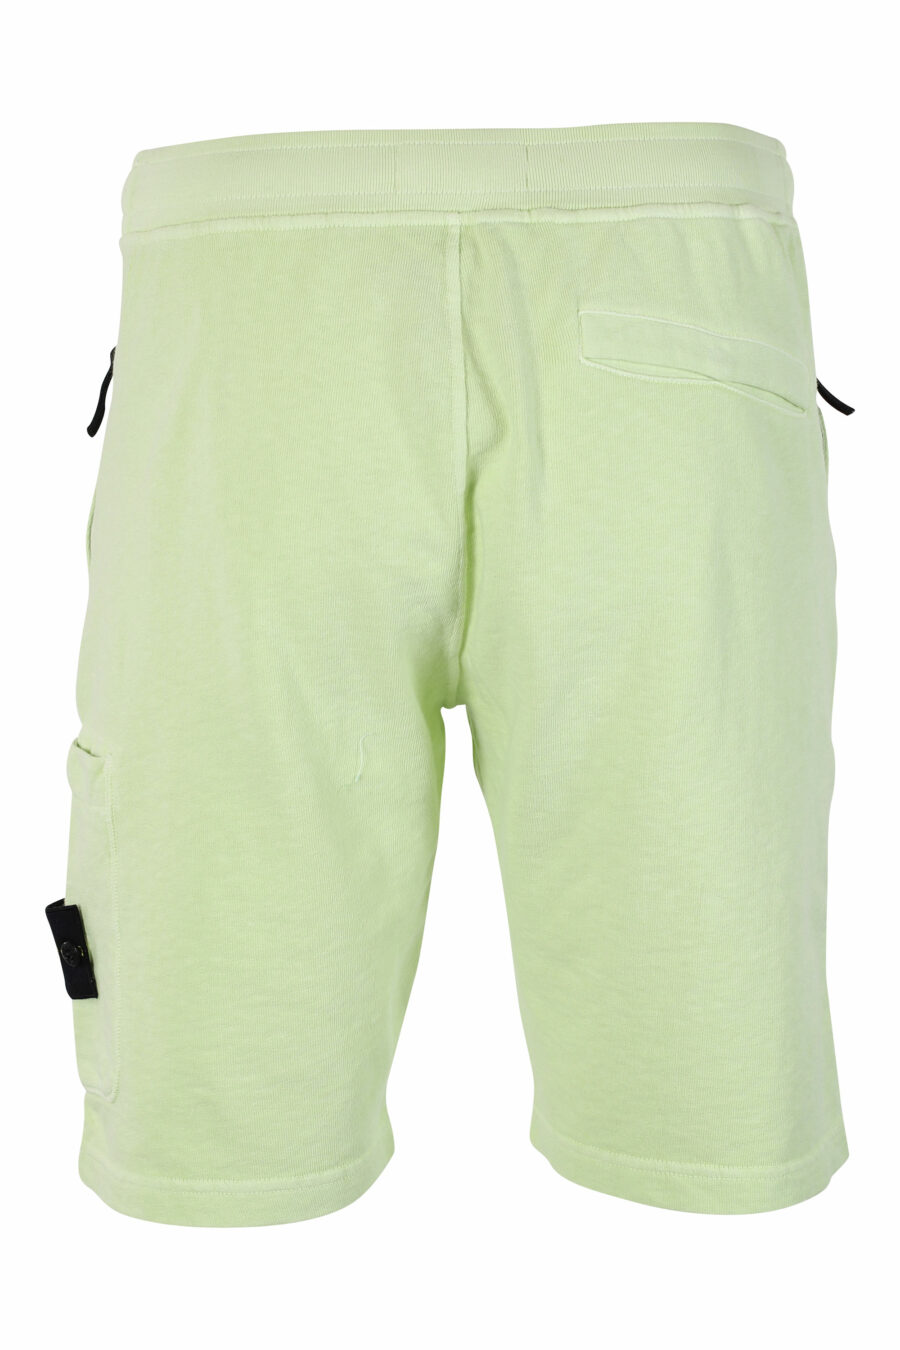 Pantalón de chándal corto verde claro con parche - IMG 9531